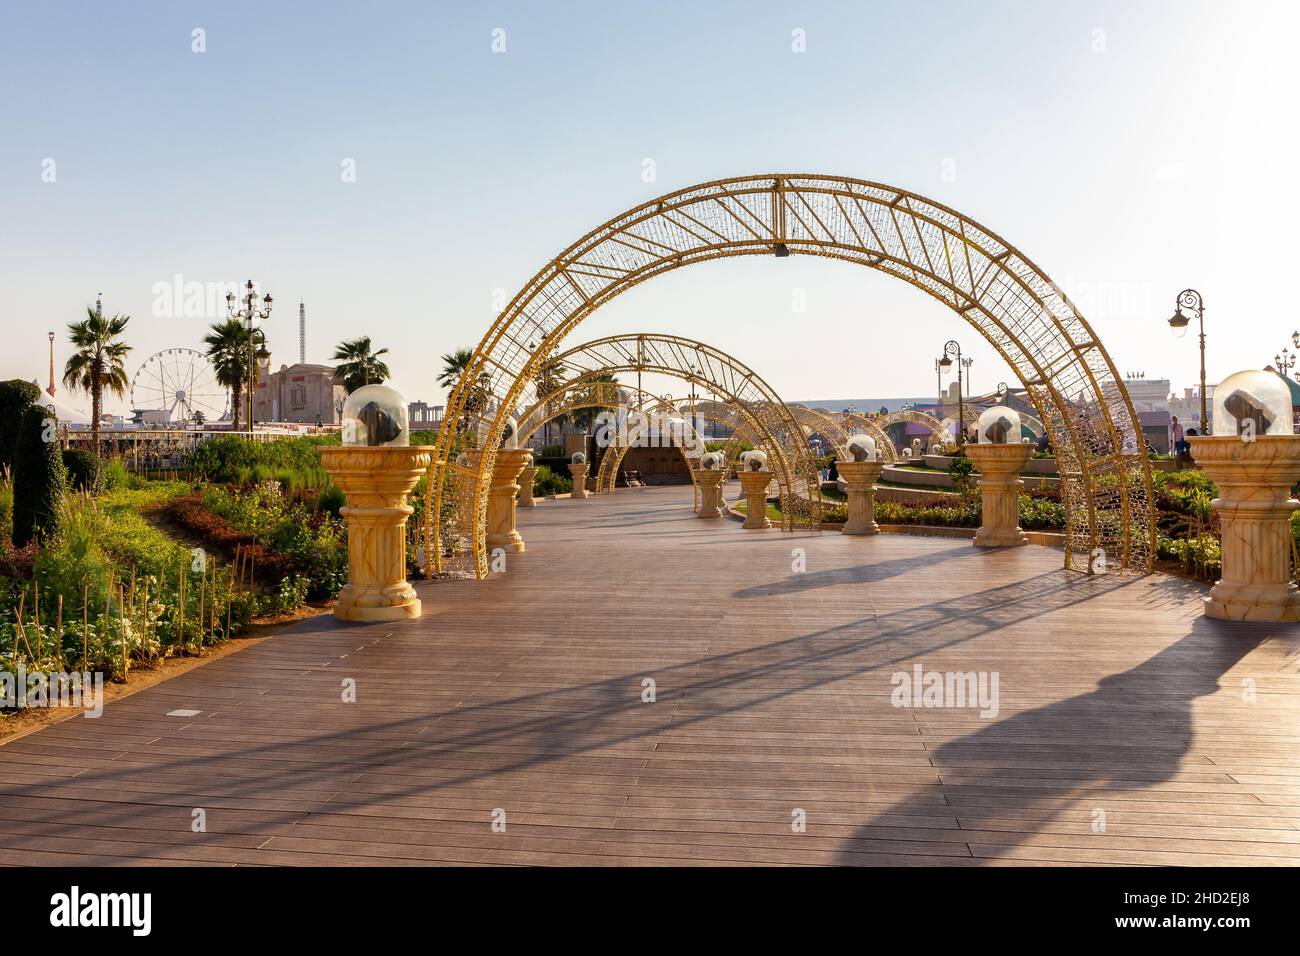 Dubaï, Émirats arabes Unis, 10.01.21.Parc d'attractions Global Village à Dubaï, promenade en bois avec arcs lumineux, lanternes. Banque D'Images